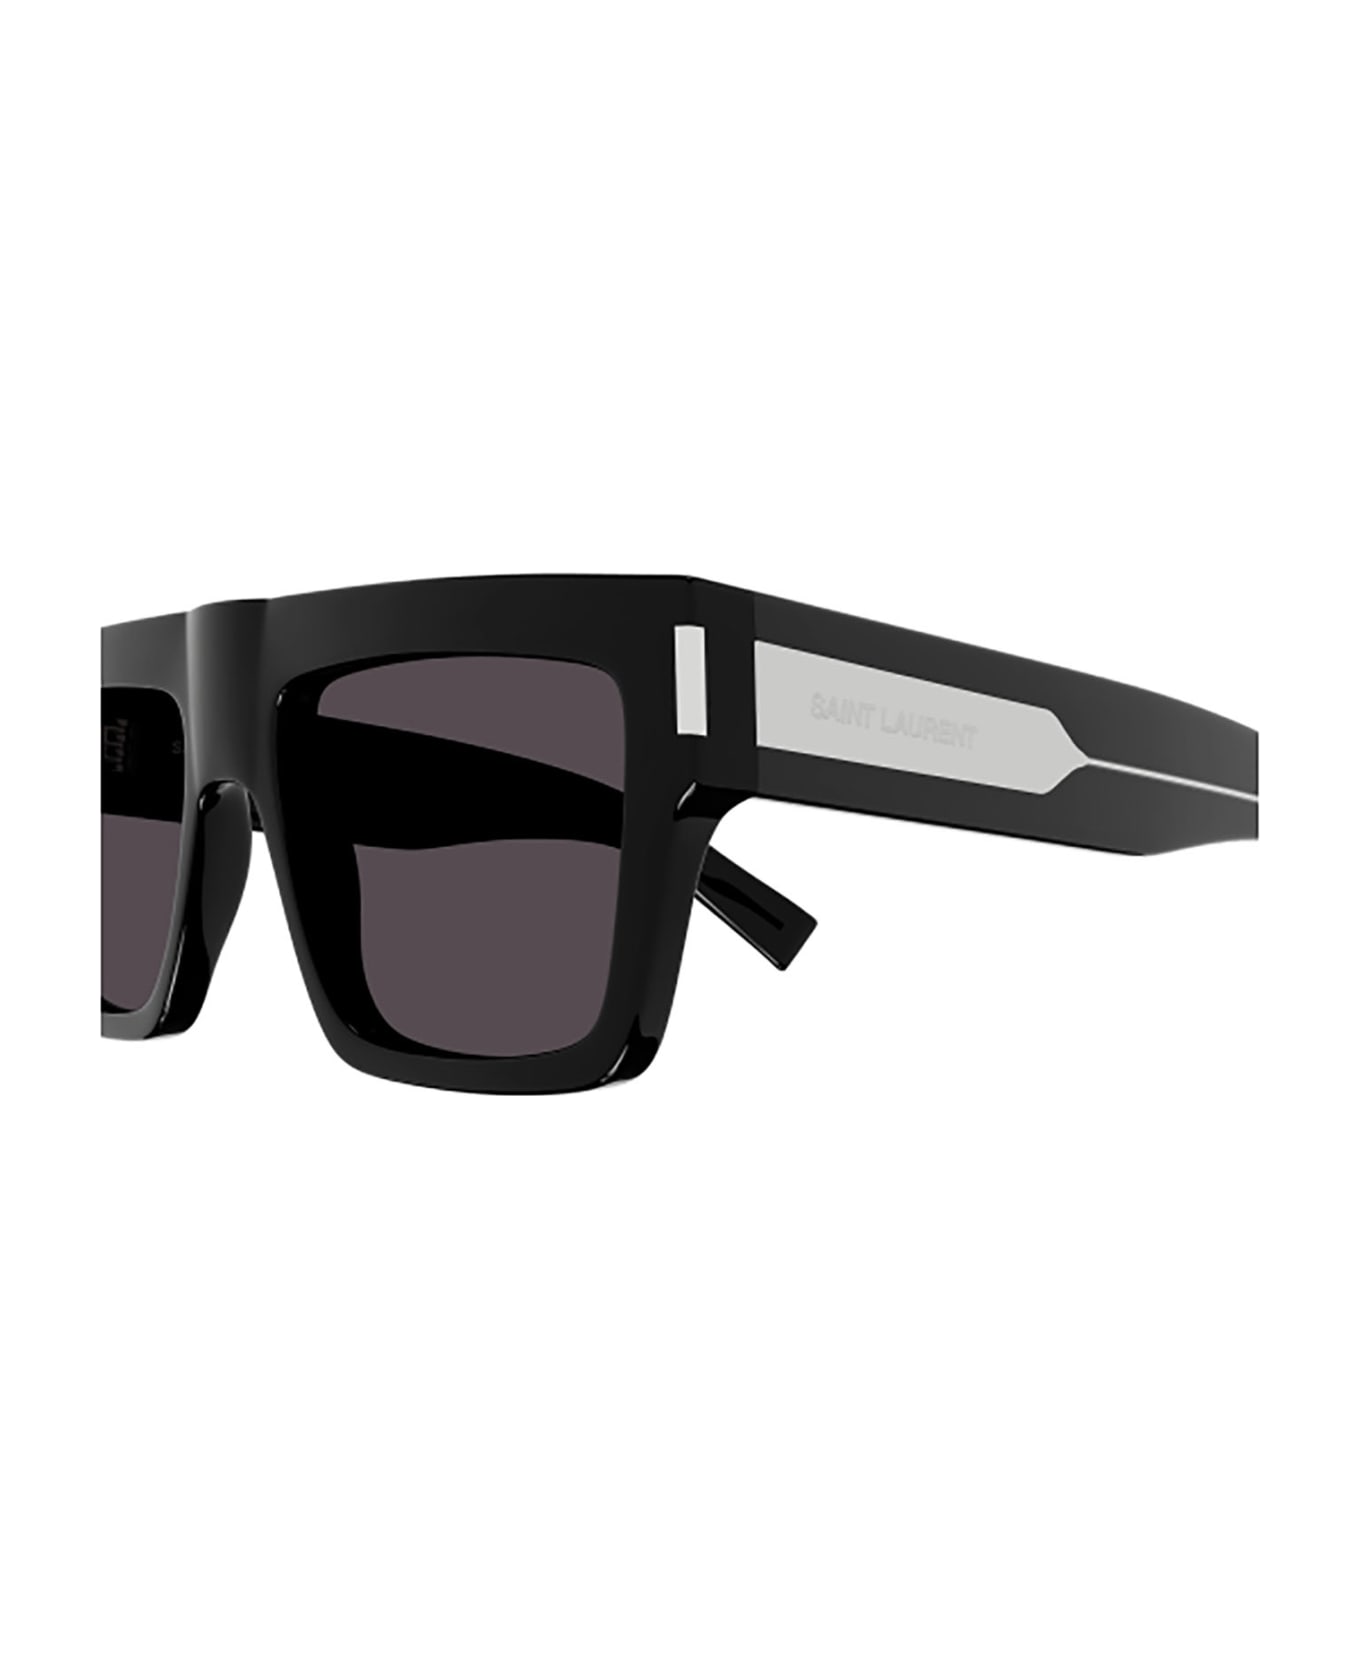 Saint Laurent Eyewear SL 628 Sunglasses - Black Crystal Black サングラス